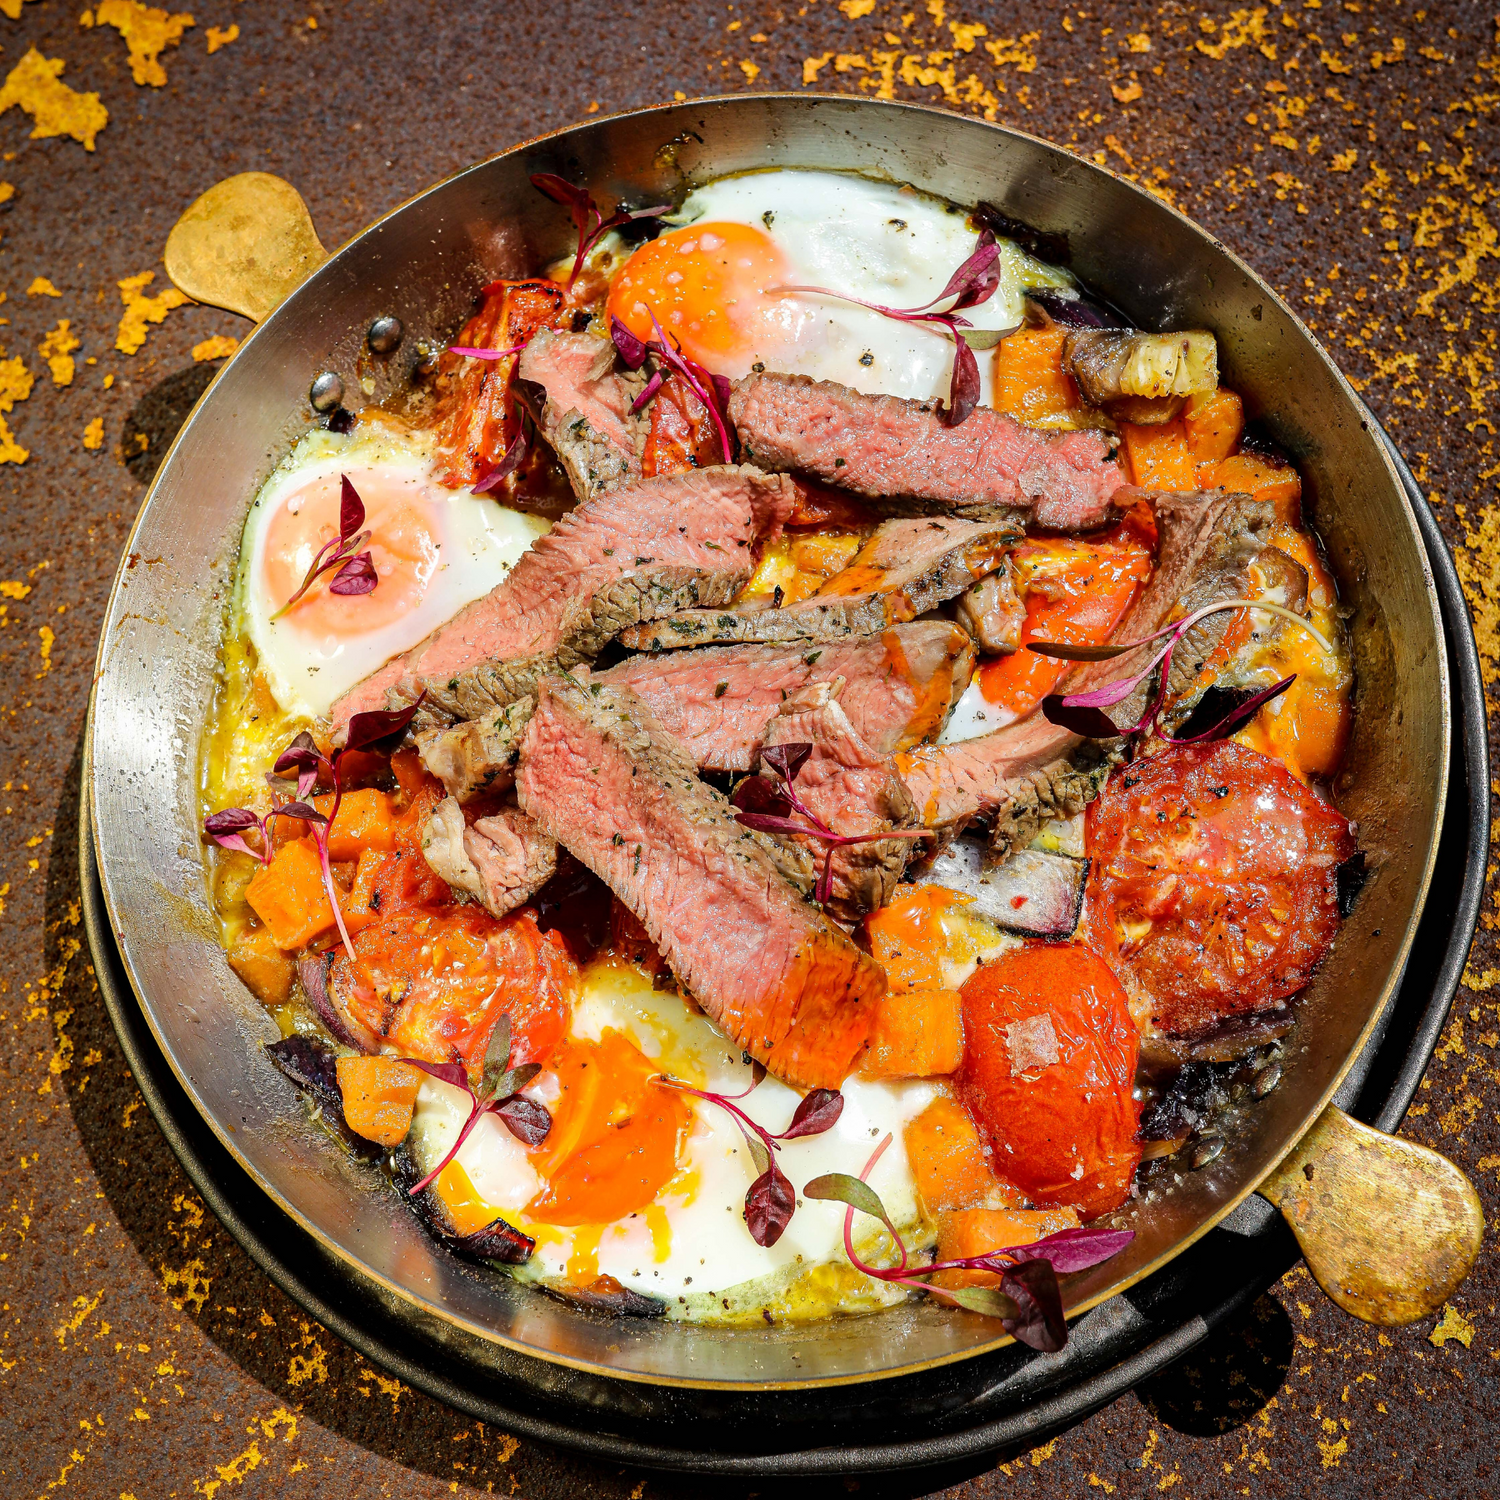 James Strawbridge's Beef and Sweet Potato Hash